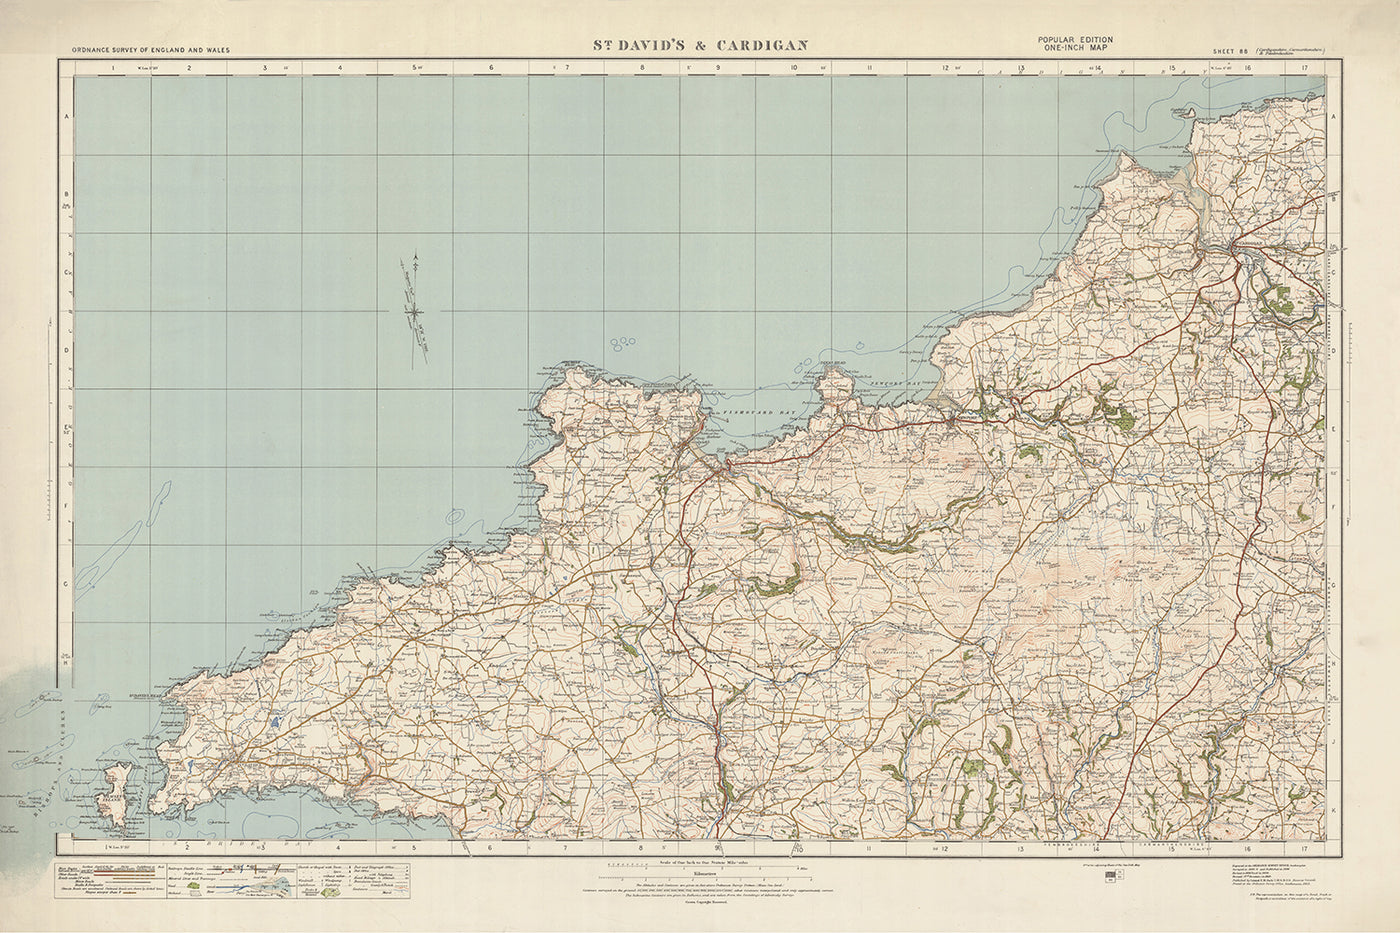 Mapa de Old Ordnance Survey, hoja 88 - St. Davids & Cardigan, 1925: Fishguard, Newport, Letterston, Ramsey Island y el Parque Nacional de la Costa de Pembrokeshire